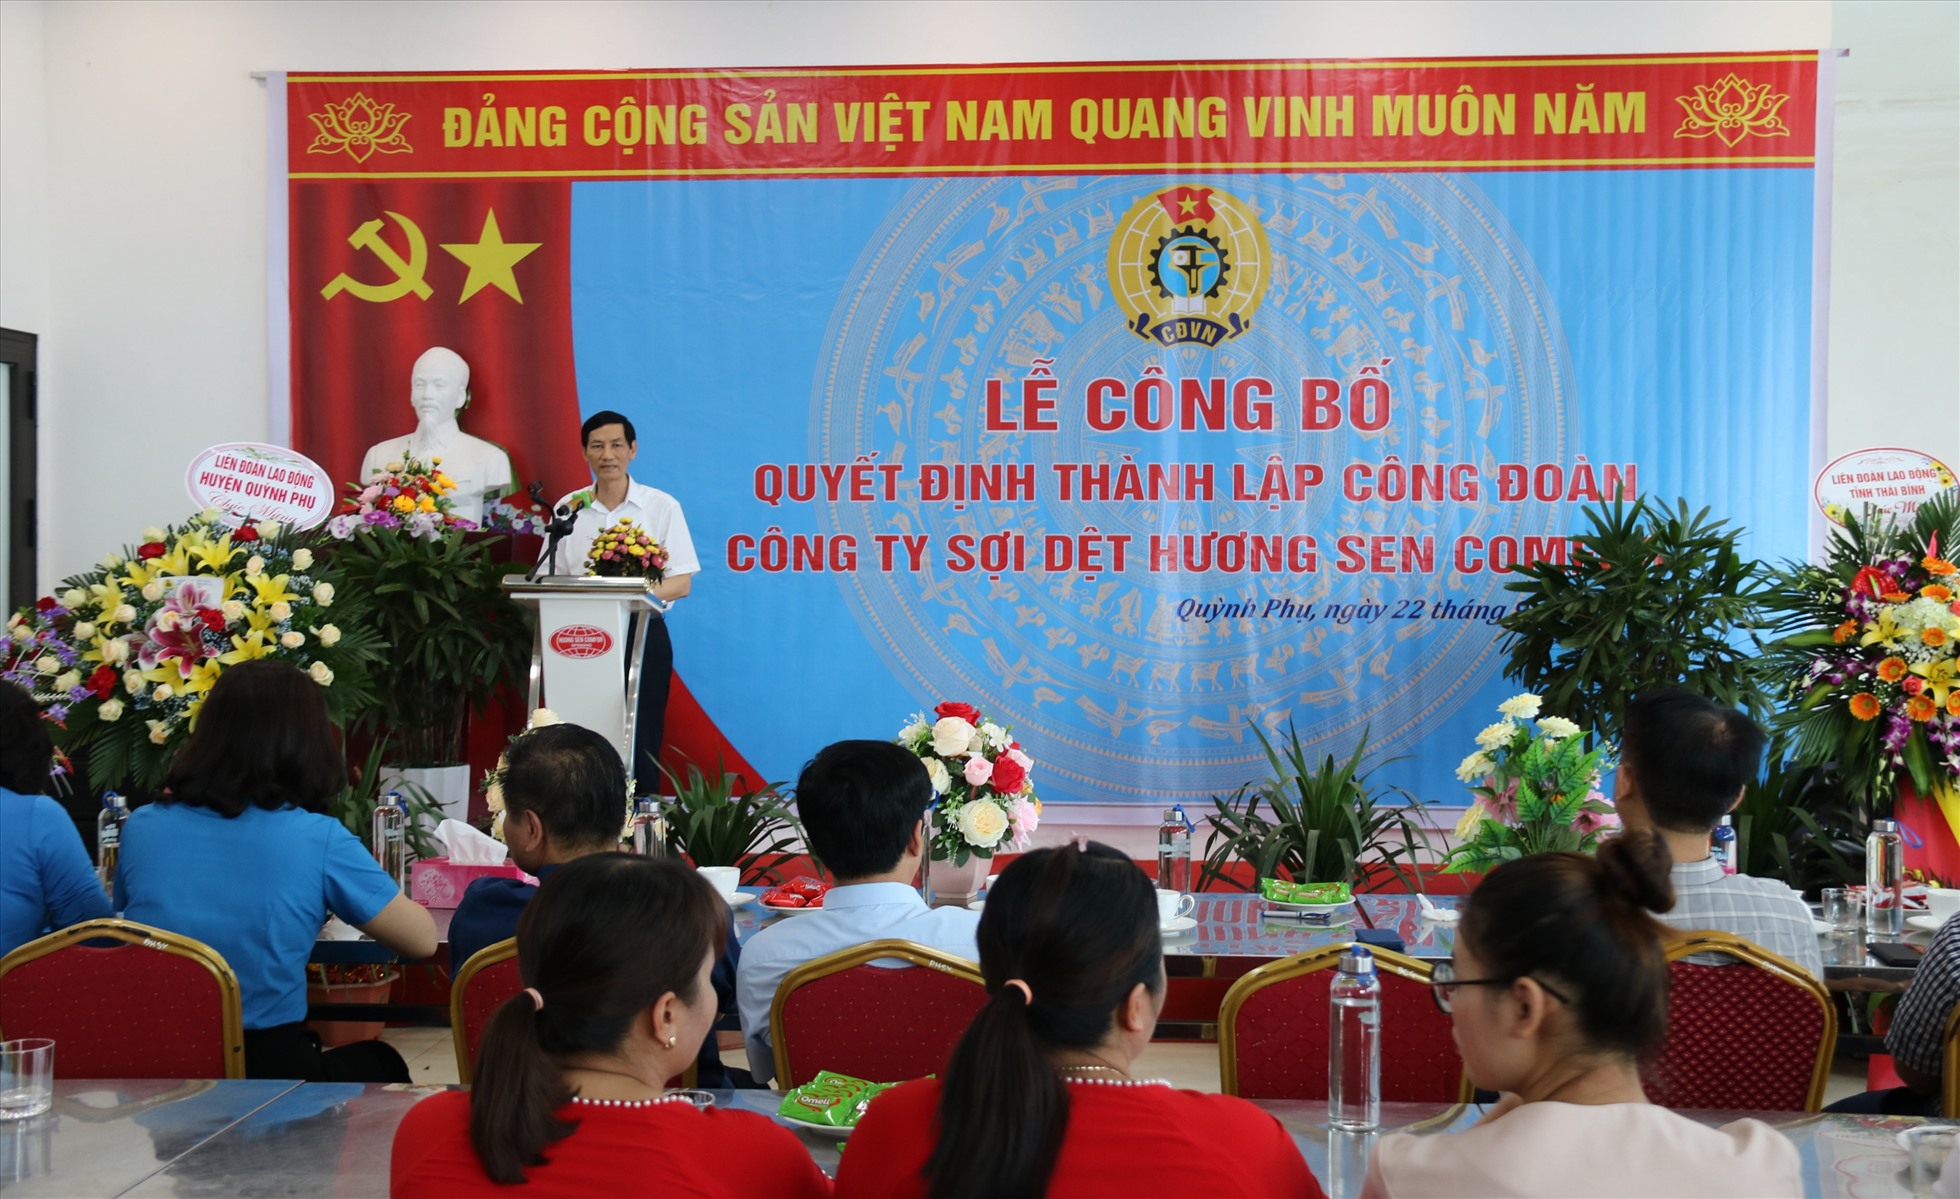 Ông Đỗ Văn Vẻ - Tổng Giám đốc Công ty TNHH Sợi dệt Hương Sen Comfor phát biểu tại buổi lễ ra mắt CĐCS. Ảnh: B.M